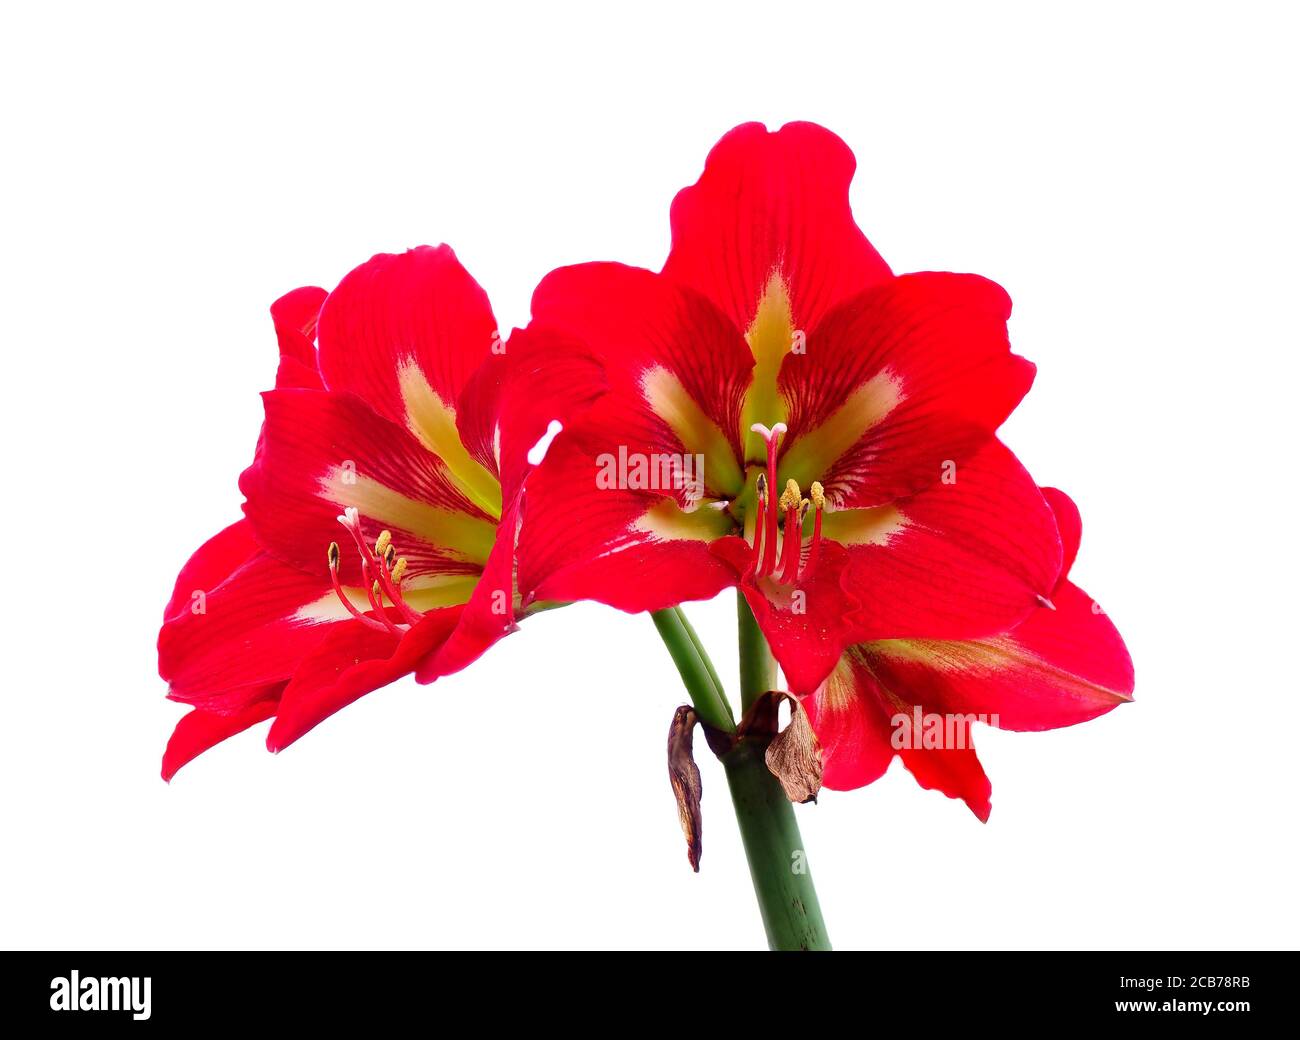 Messa a fuoco impilato Closeup immagine di Amaryllis rosso fiori isolato su Bianco Foto Stock